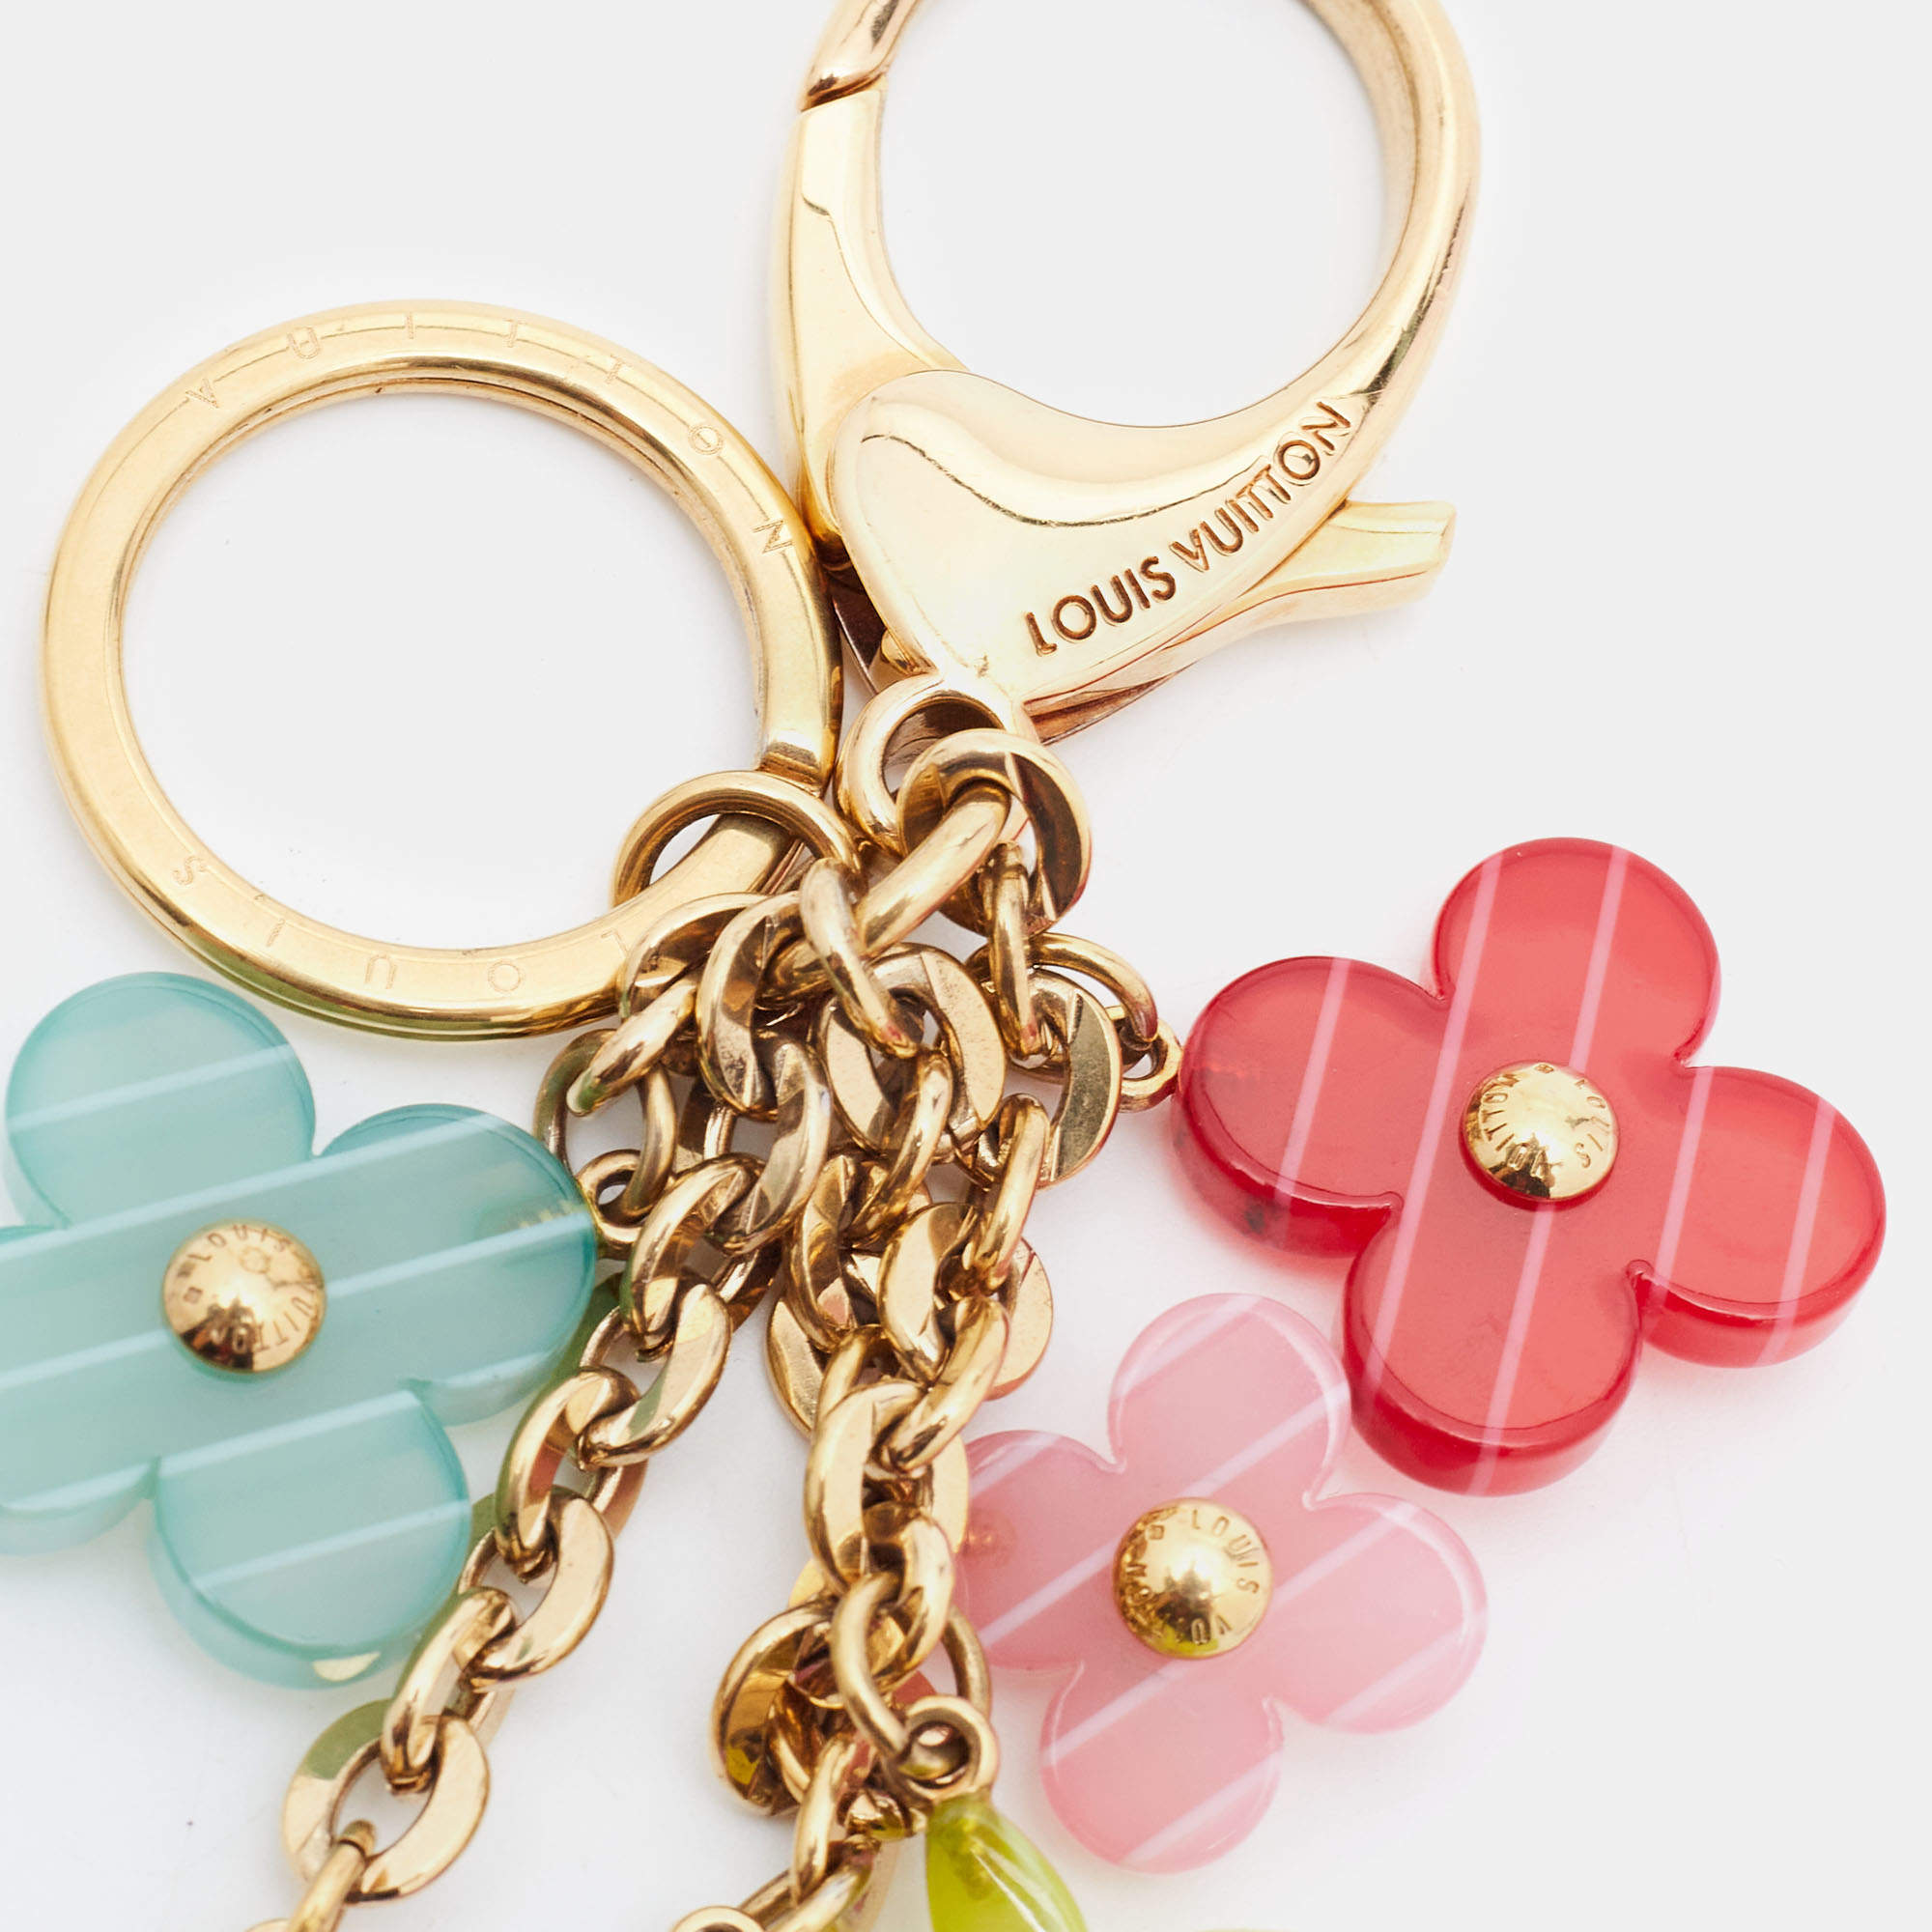 Louis Vuitton Multicolor Aqua Flower Bag Charm Key Holder – The Closet